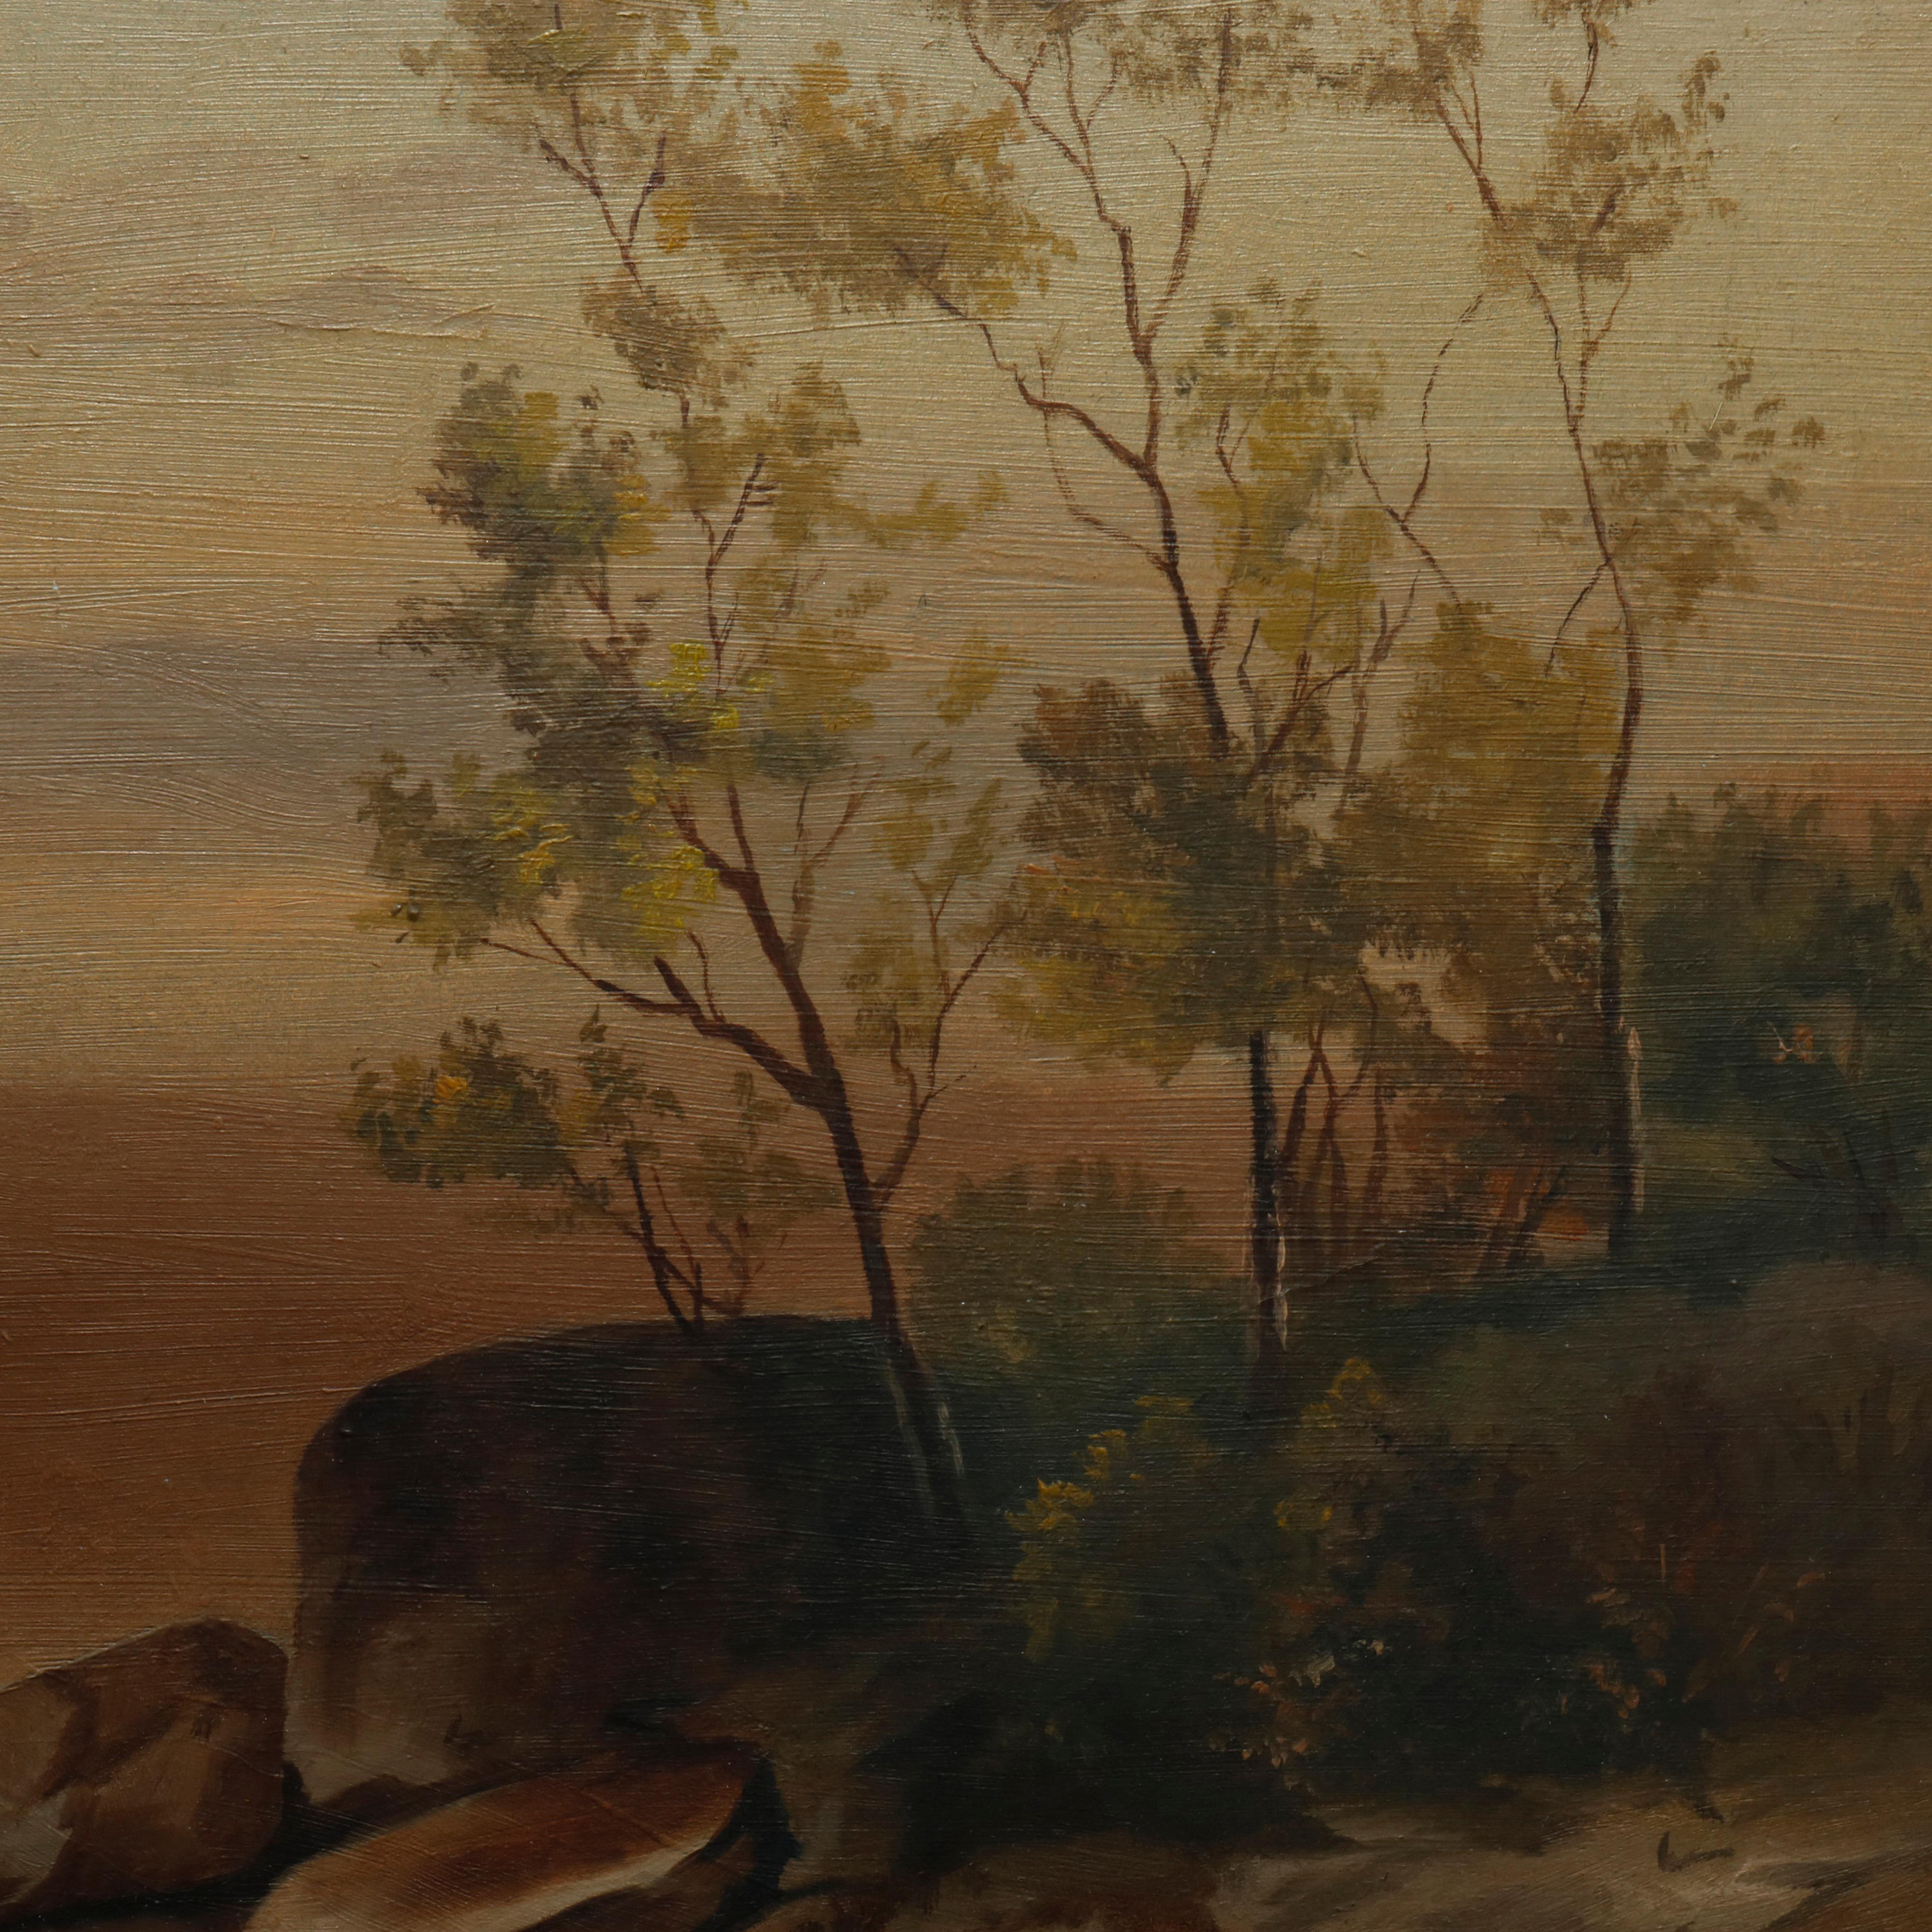 Carved Antique Hudson River School Landscape Oil Painting in Lemon Giltwood Frame c1860